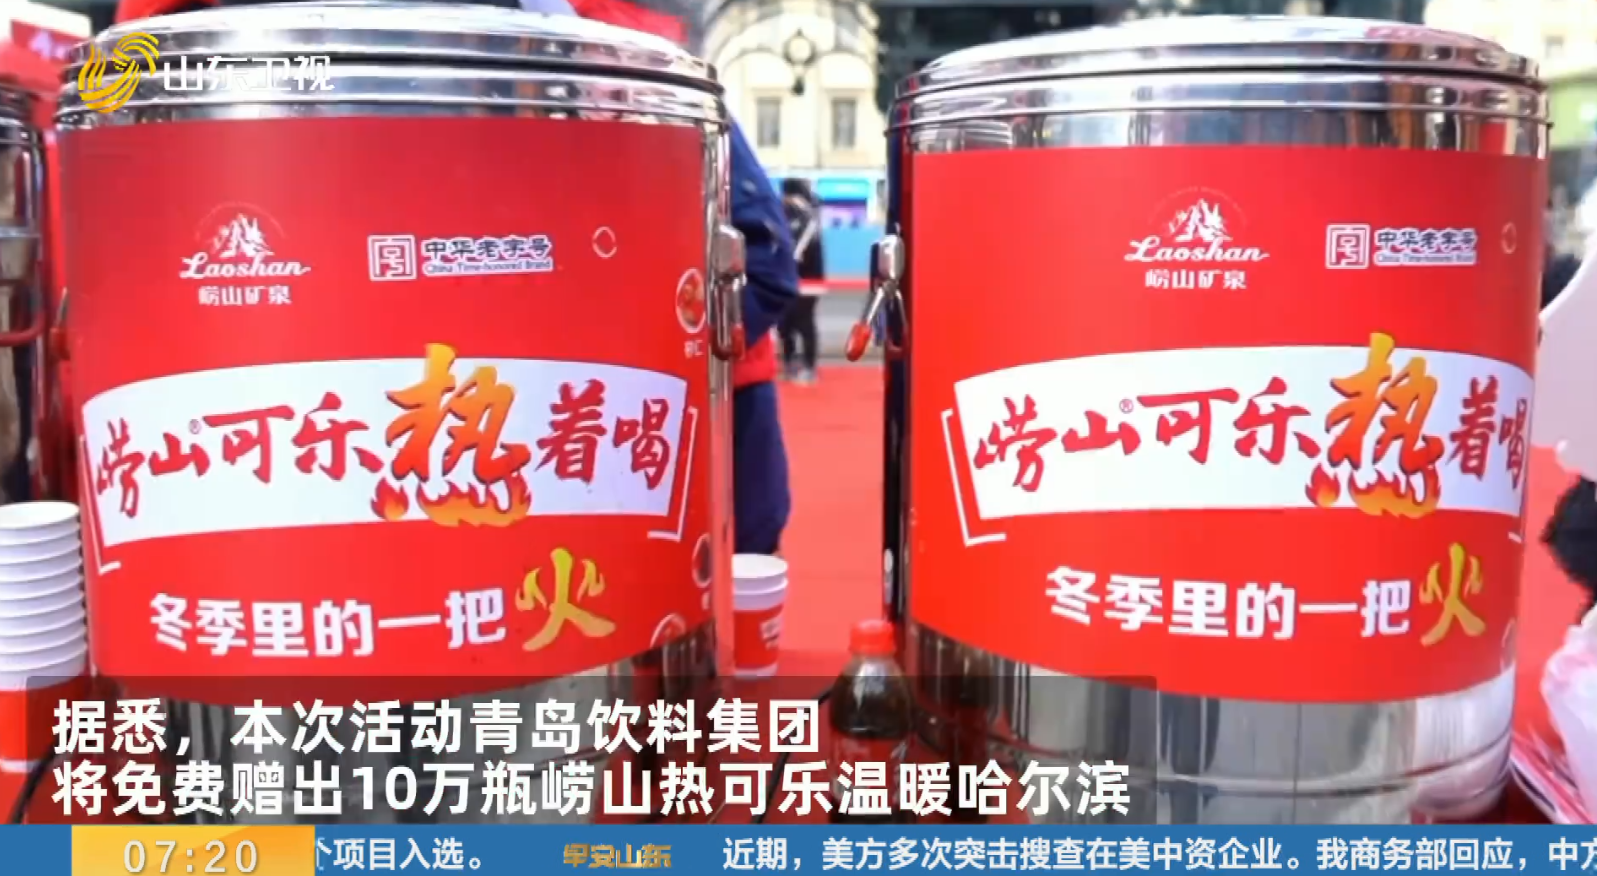 青岛饮料集团走进哈尔滨 10万瓶崂山热可乐免费喝